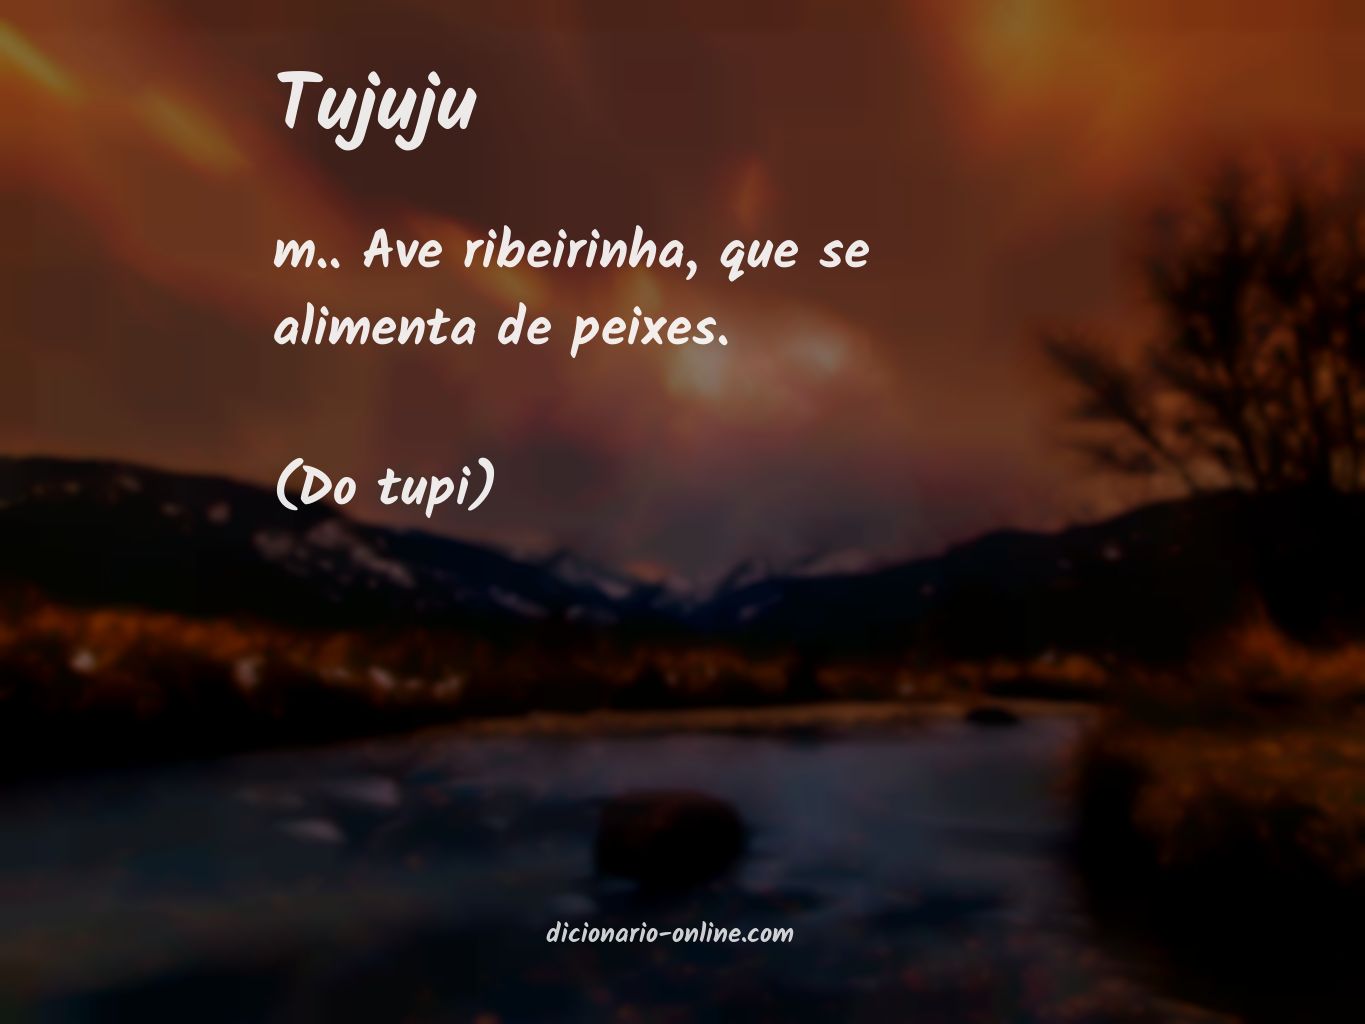 Significado de tujuju